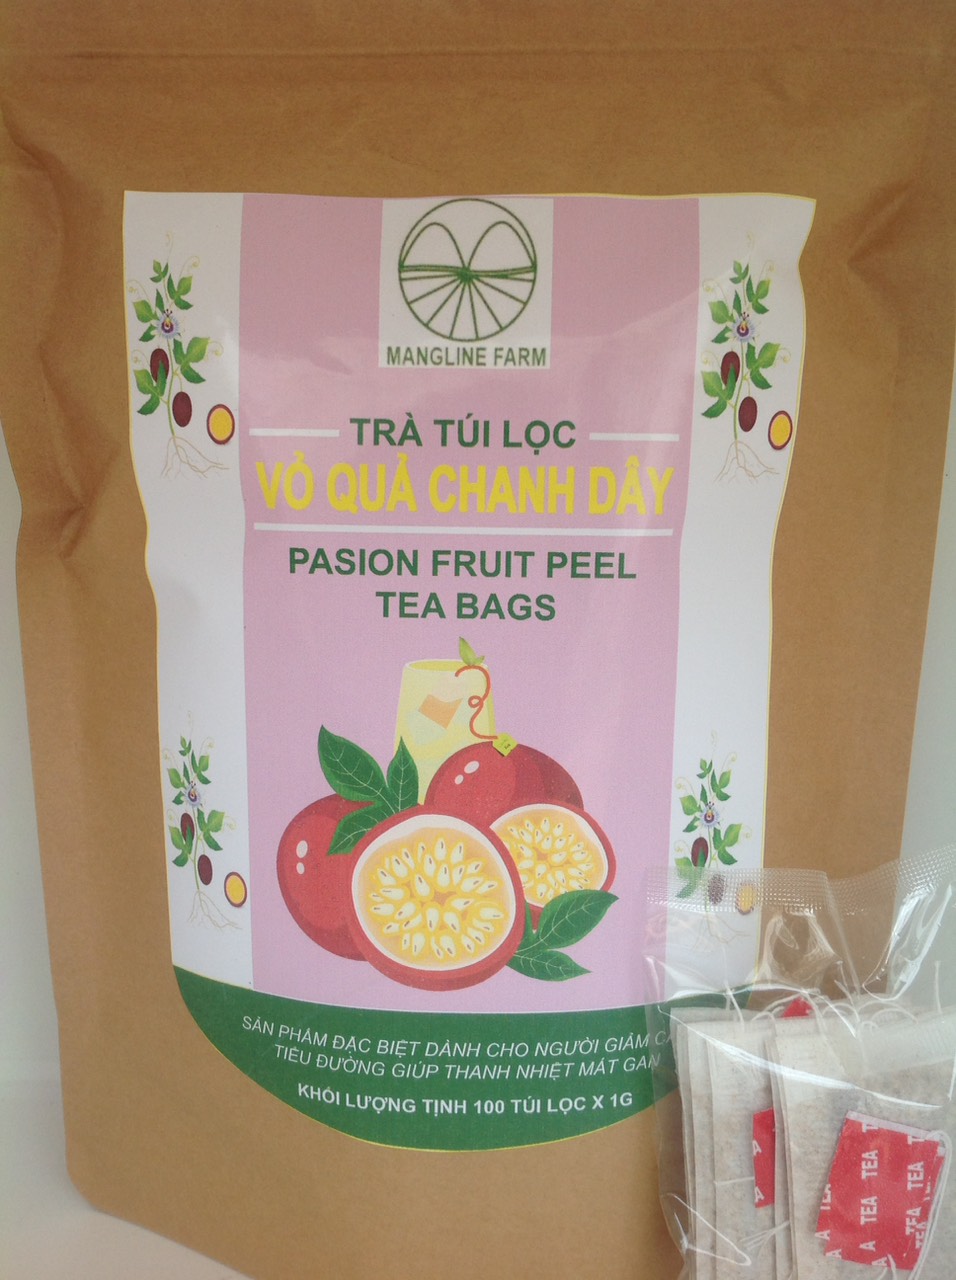 Sản phẩm mới độc lạ trà vỏ chanh dây túi lọc mangline farm đà lạt 100 túi - ảnh sản phẩm 4